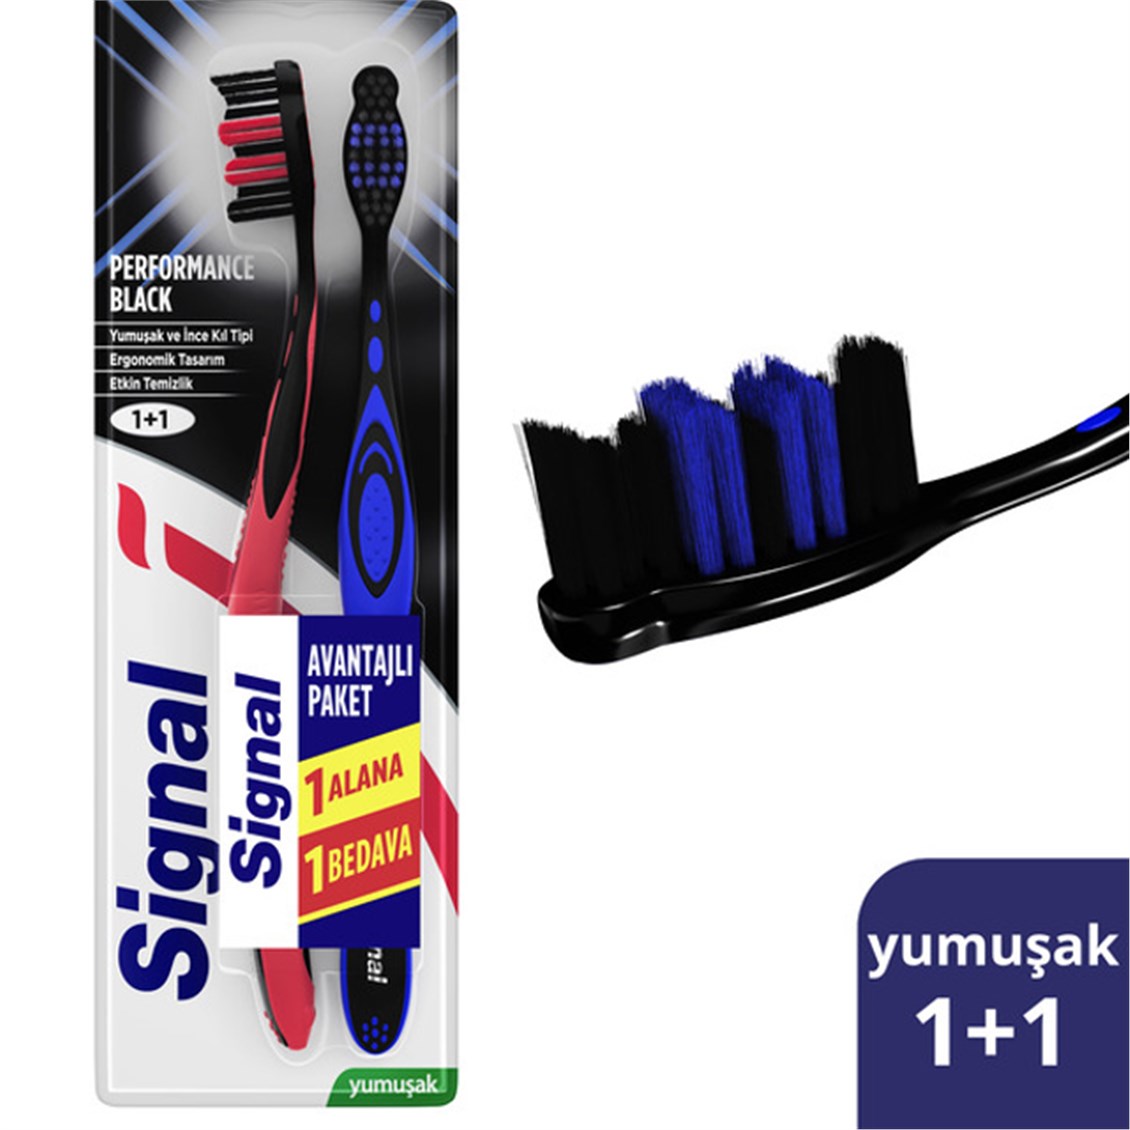 Signal Performance Black Yumuşak 1+1 Diş Fırçası - Onur Market